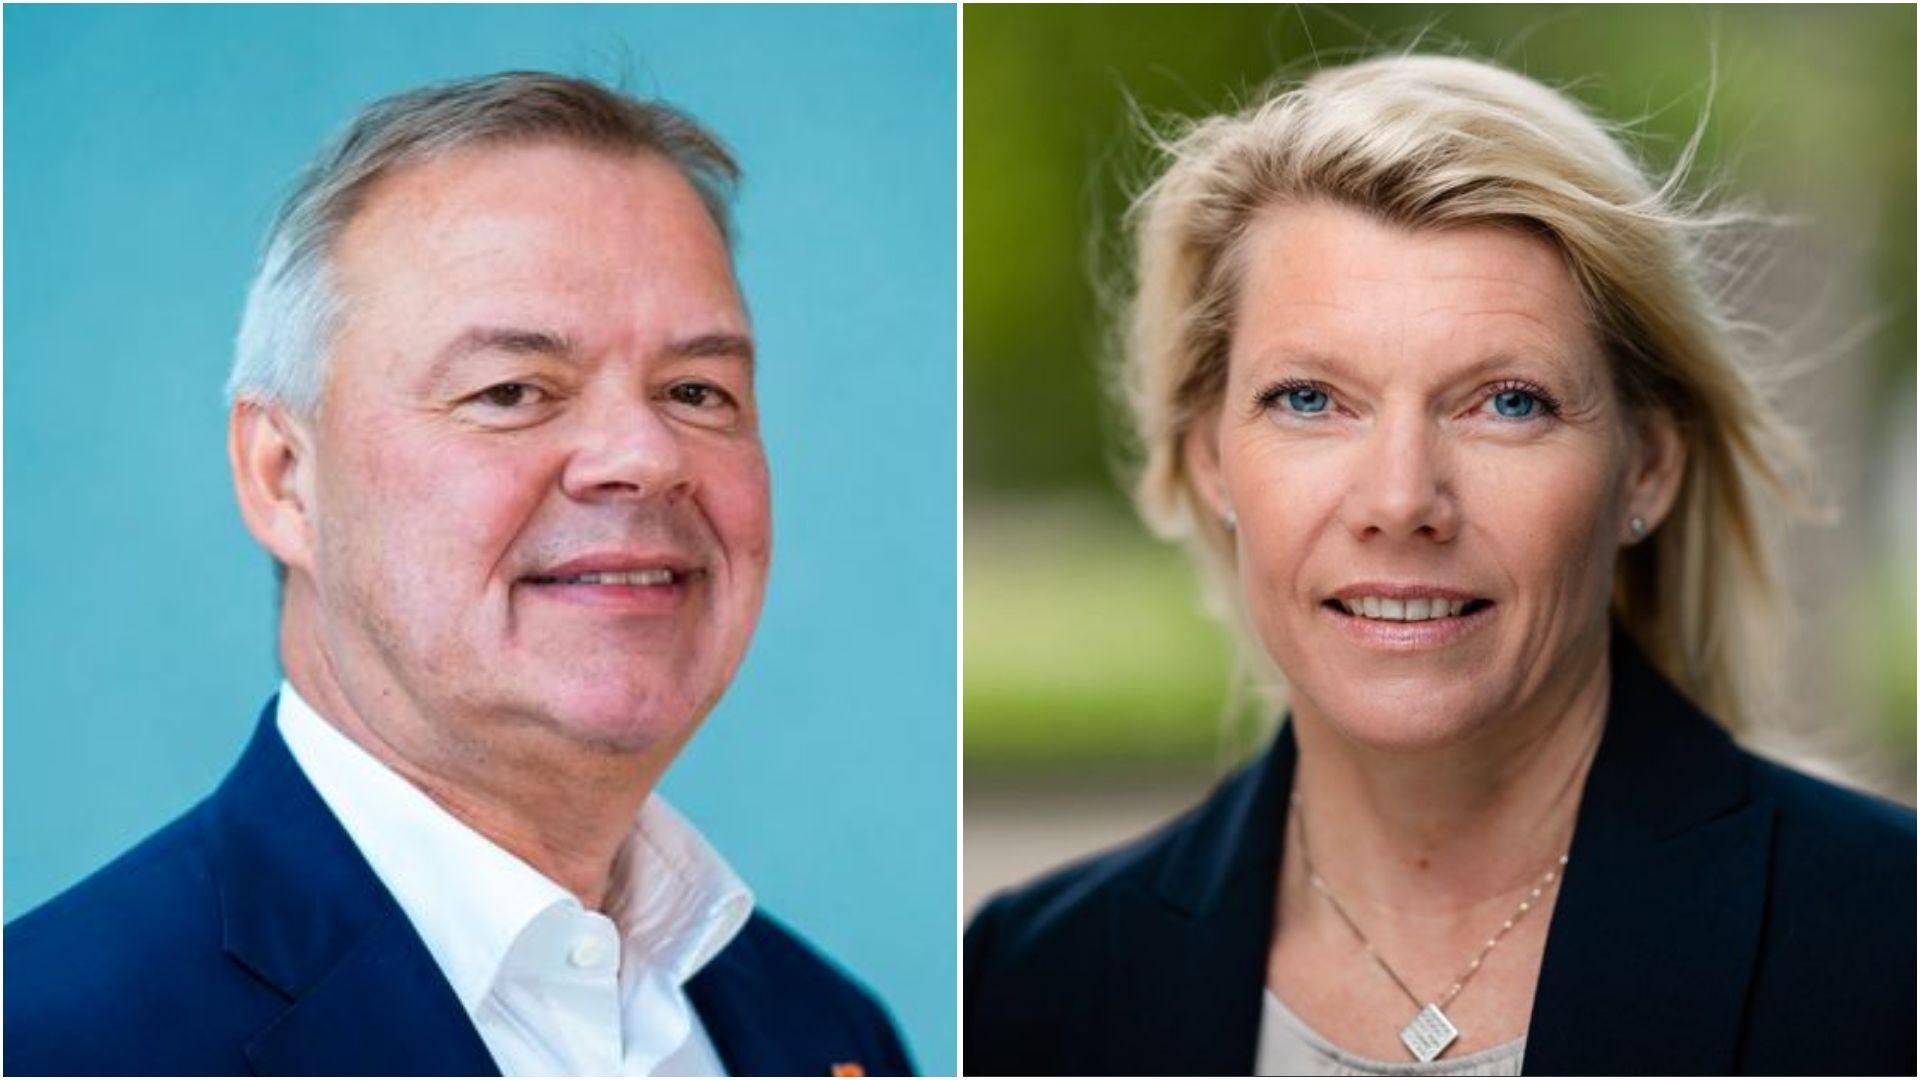 Som finansaktører og to av Norges største private investorer mener vi verden, næringslivet og politikerne går glipp av store muligheter dersom vi ikke øker tempoet i det grønne skiftet, skriver Odd Arild Grefstad og Kjerstin Braathen.